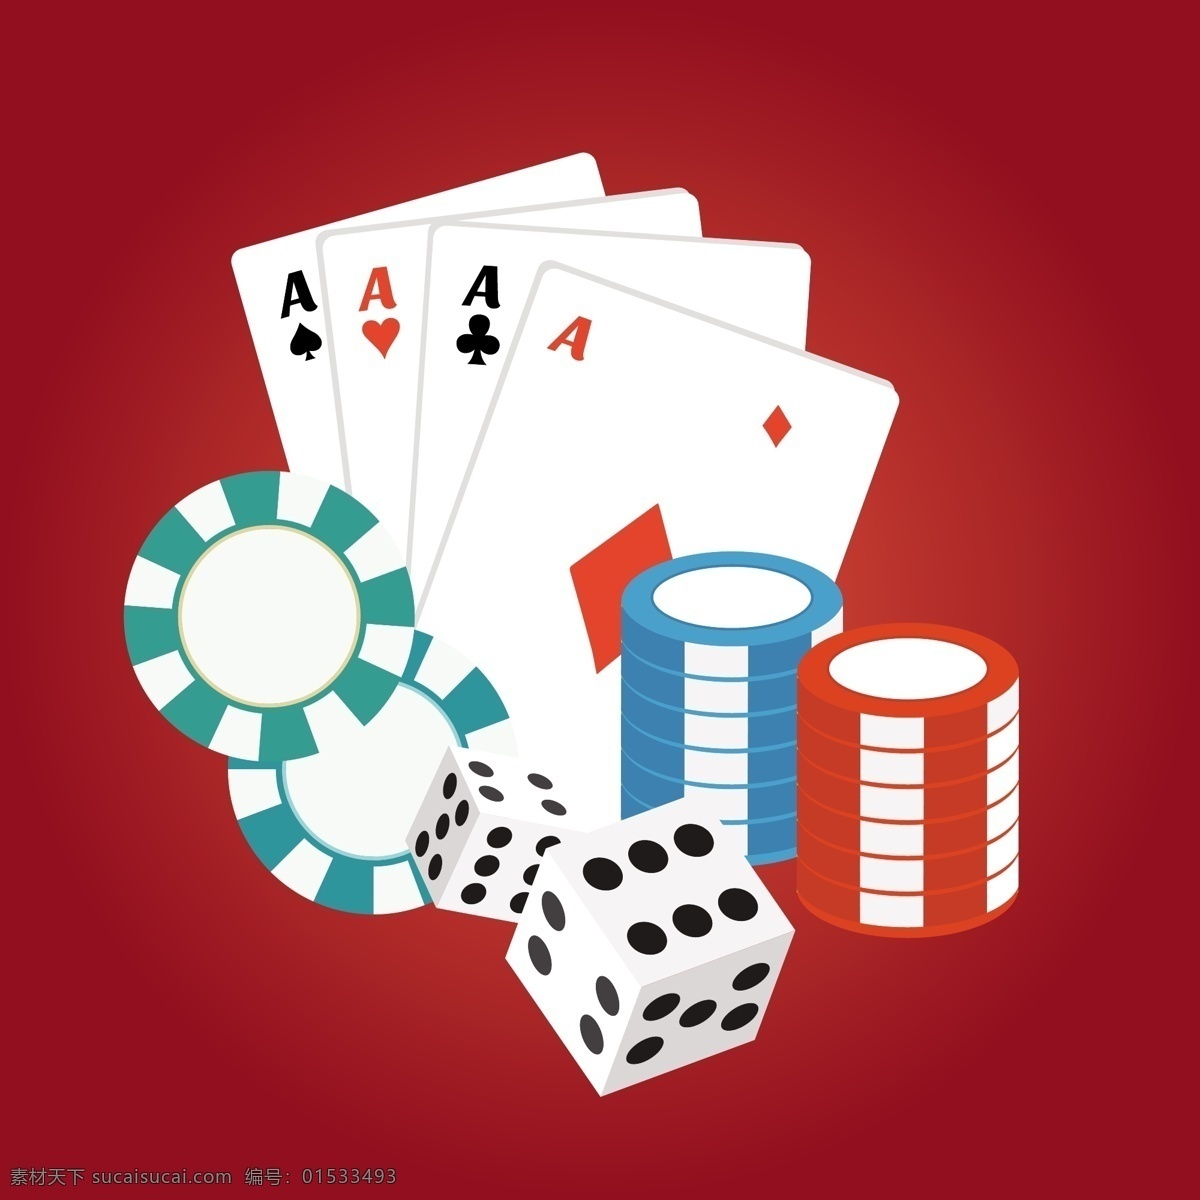 红色 背景 下 赌场 卡 筹码 卡片 金钱 游戏 金融 扑克 美元 付款 现金 骰子 货币 国际 丰富 运气 账单 纸牌游戏